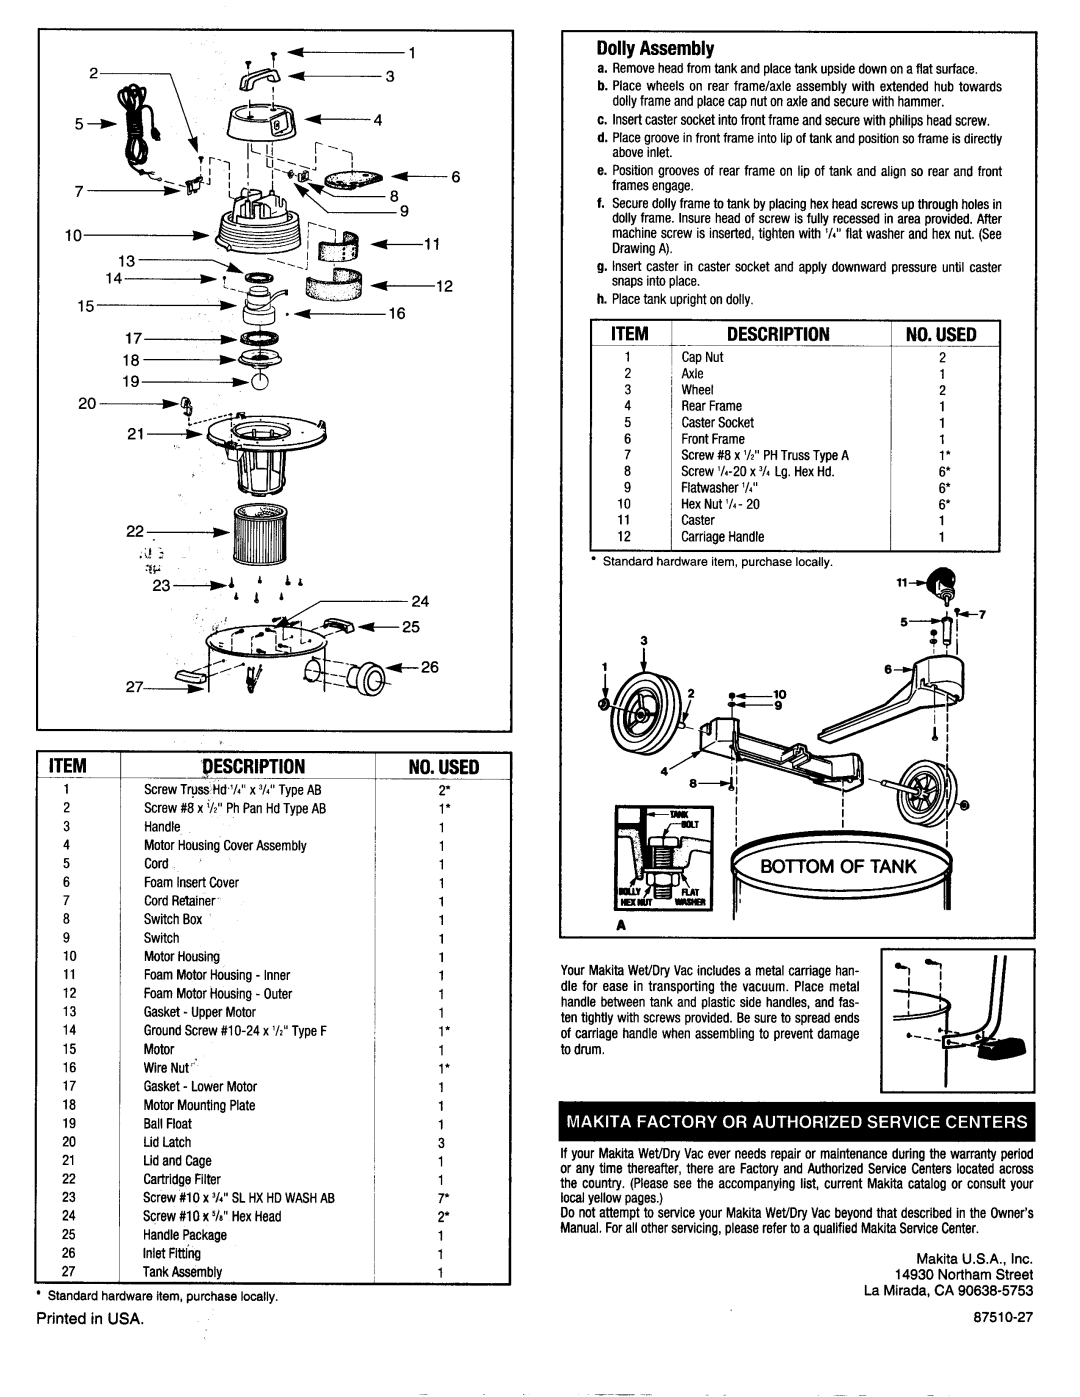 Makita XSV10 warranty No. Used, L - F, Pescription, Dolly Assembly, Description 